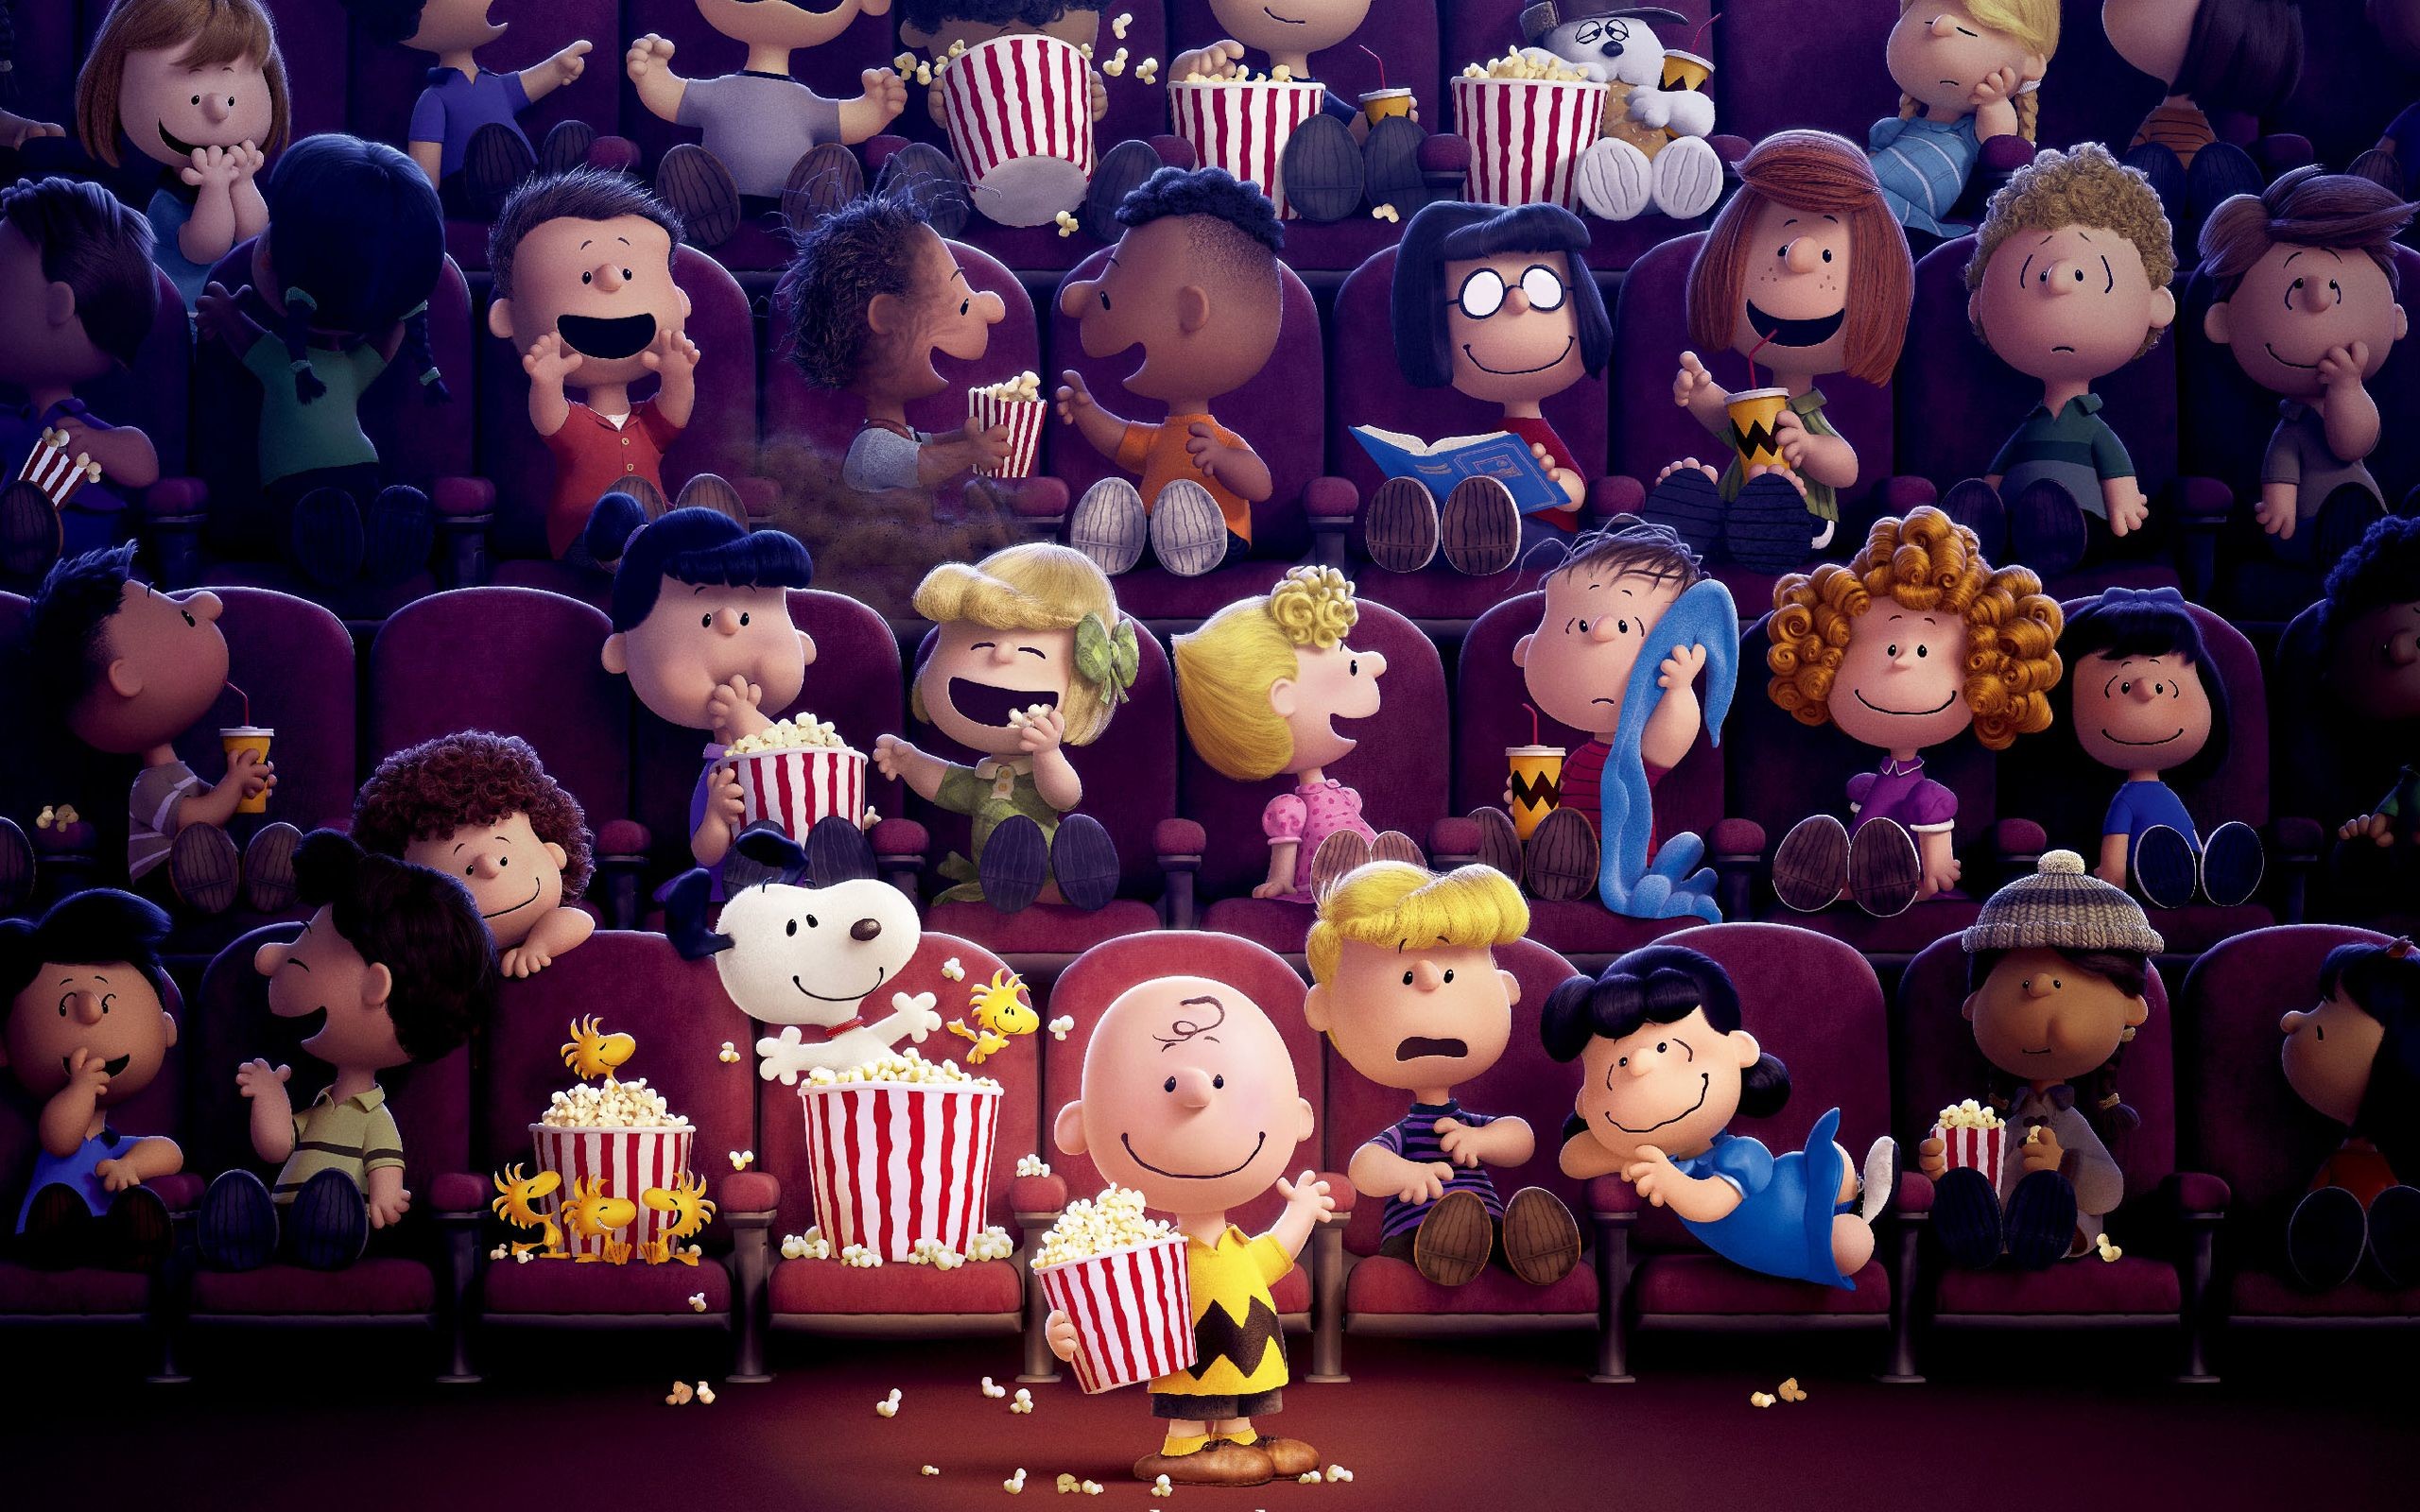 2560x1600 The-Peanuts-Movie-HD-Wallpaper.jpg